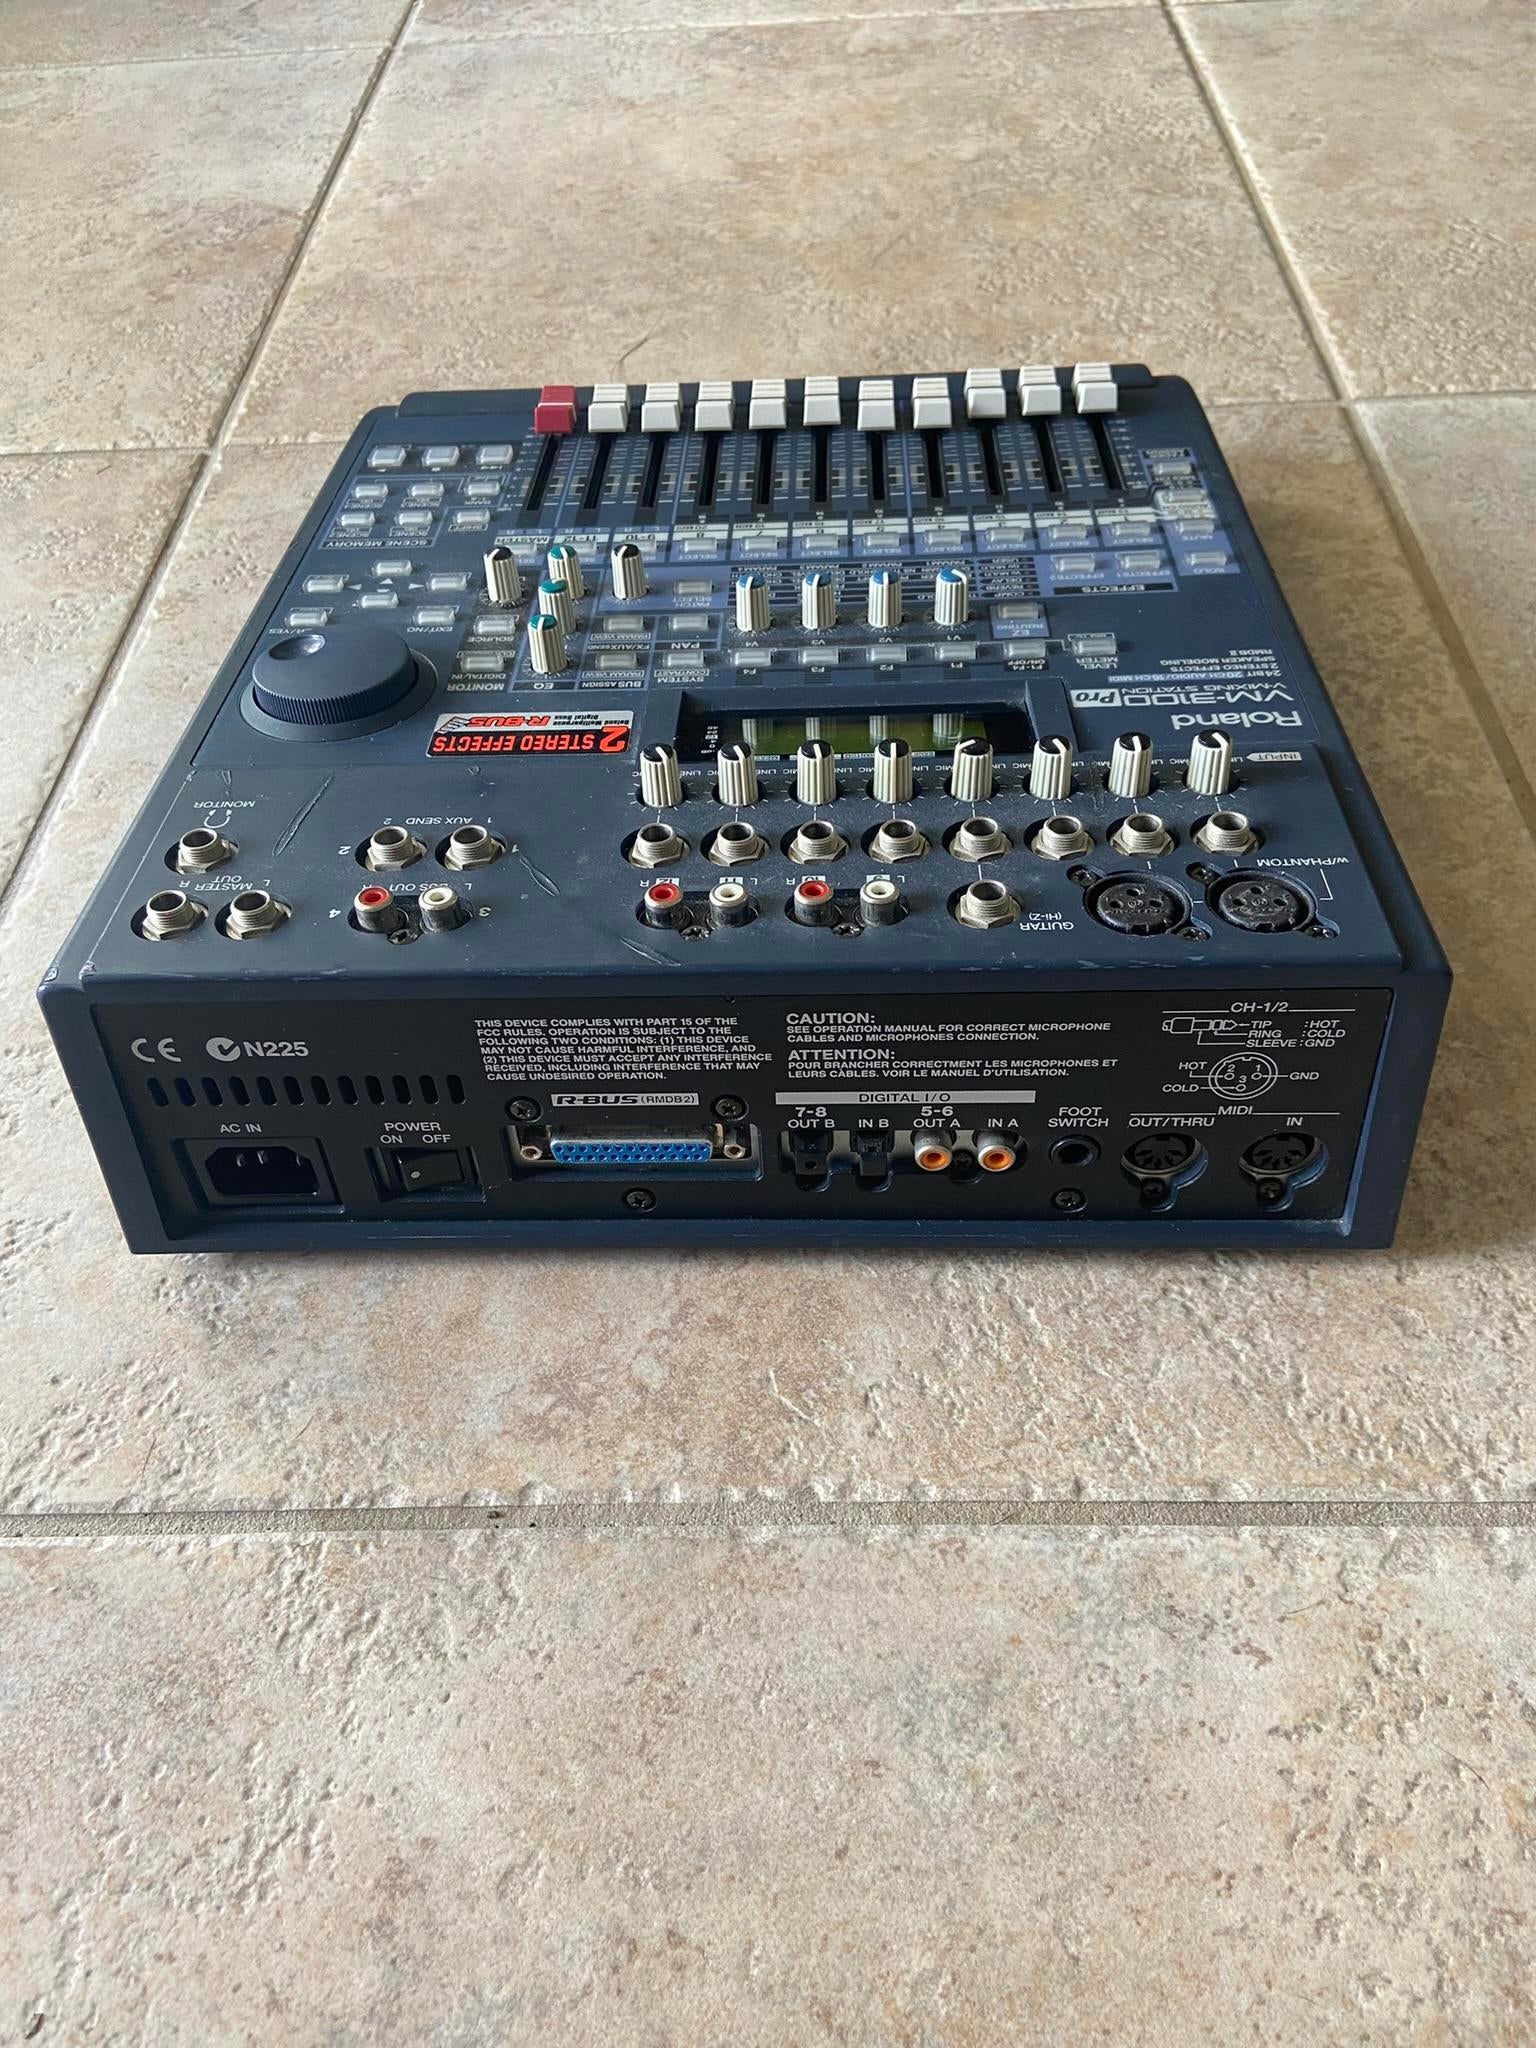 Used Roland VM-3100 Pro Digital Mixer